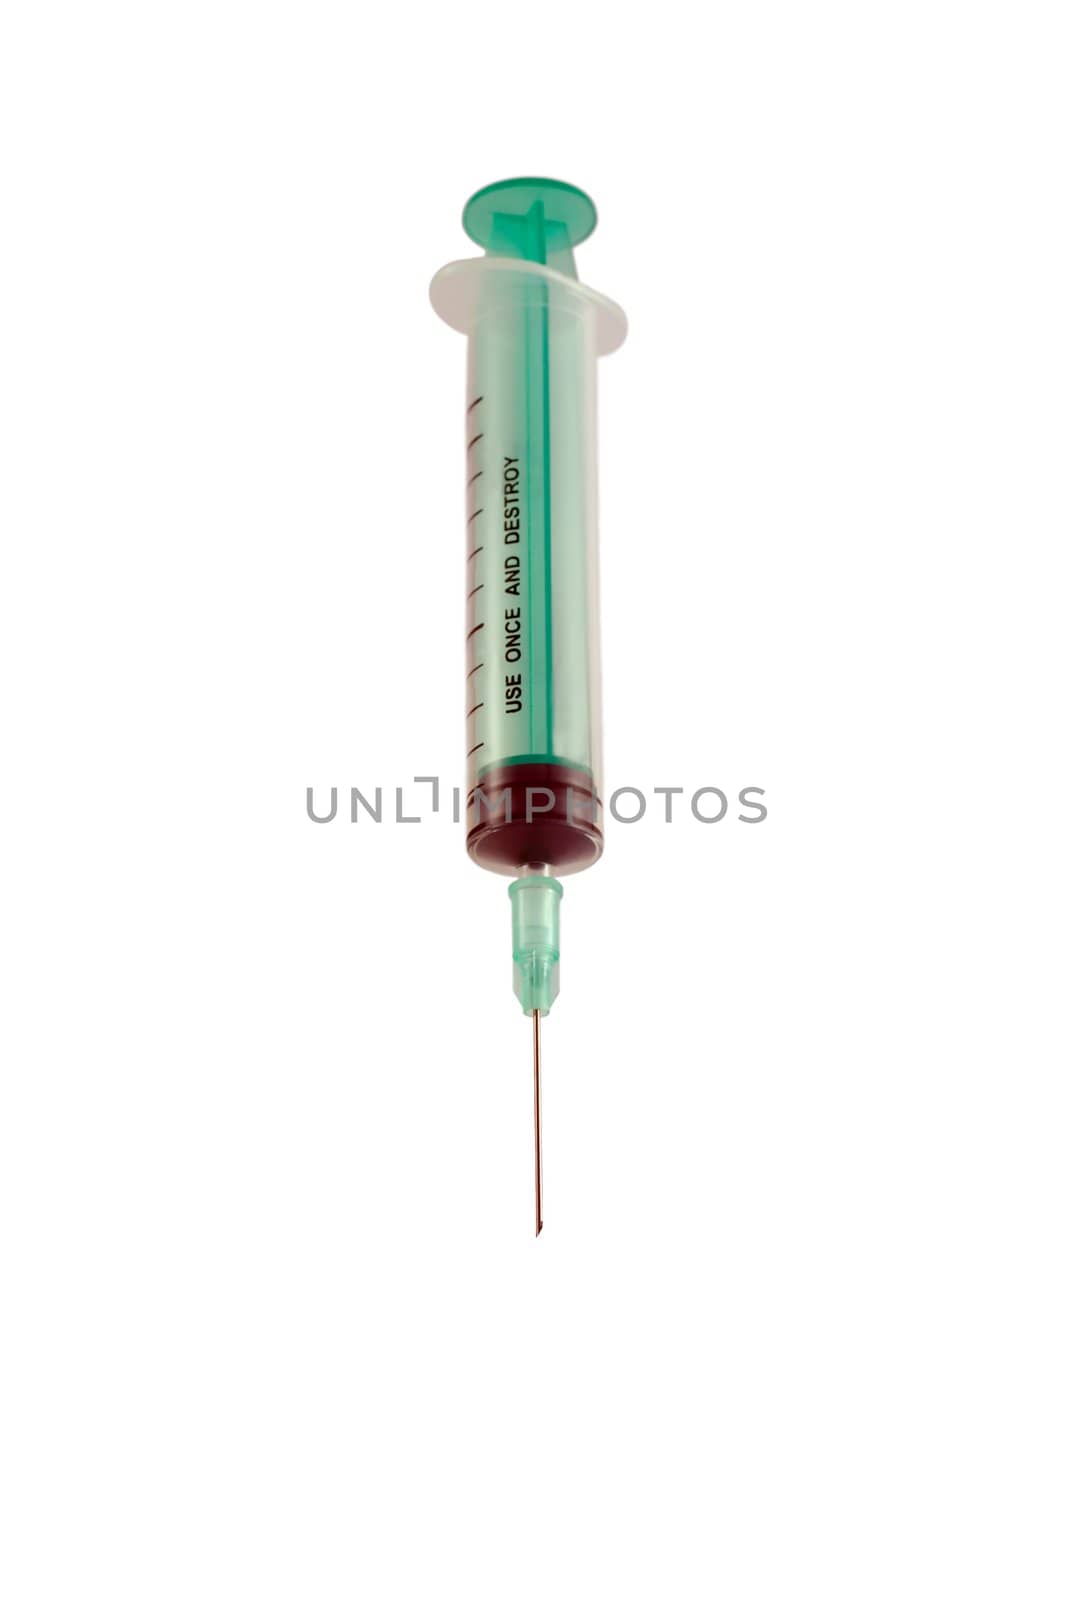 Syringe by Vladyslav